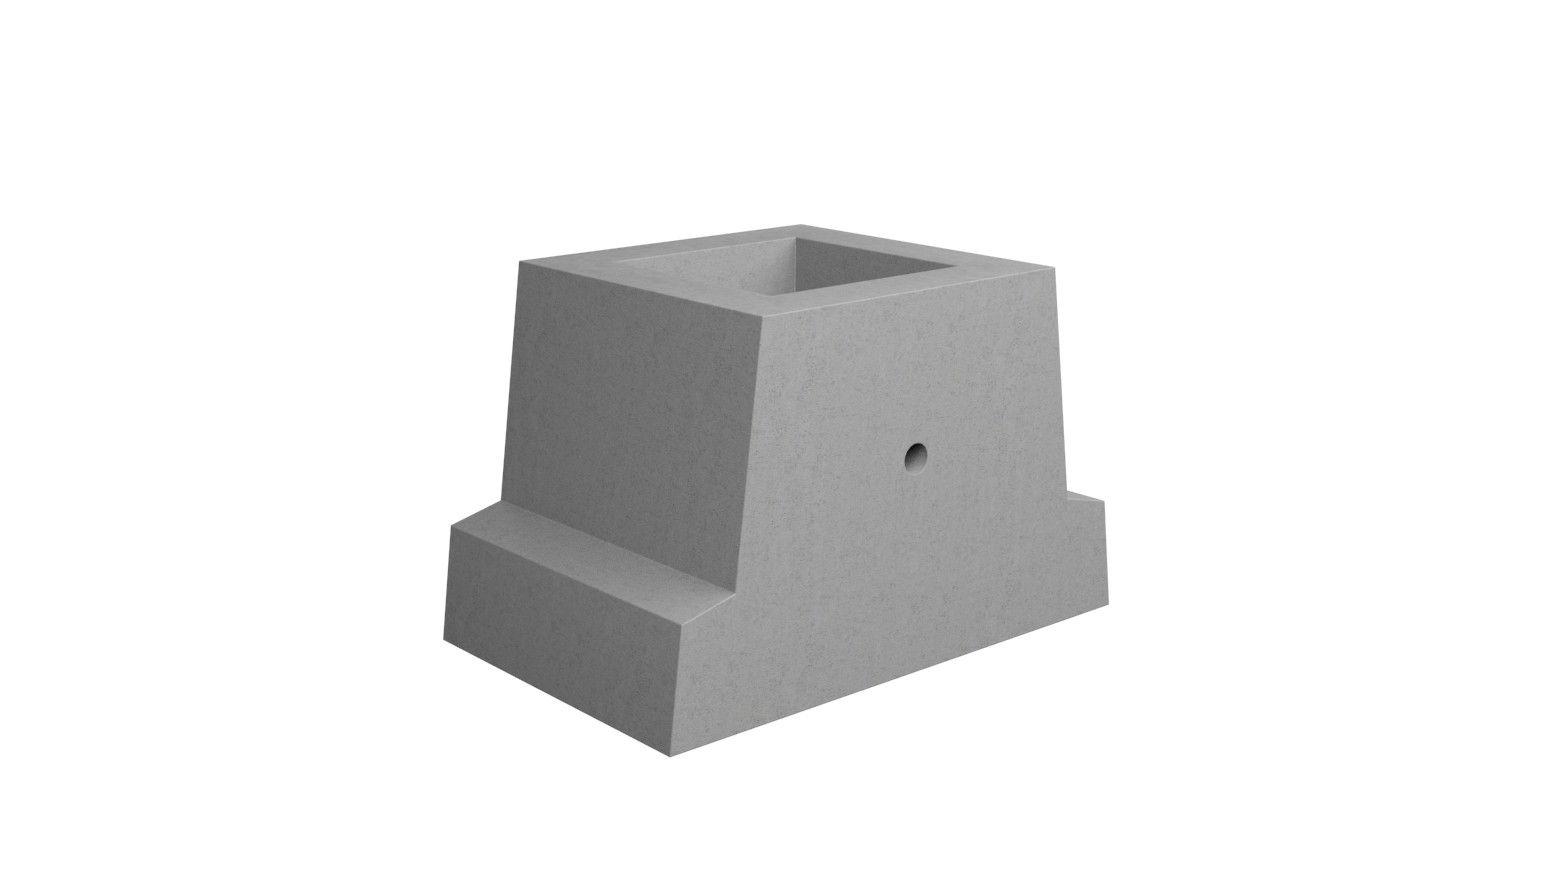 Фундамент ф 1. Фундаментные блоки ф-1 для дорожных знаков. Блок бетонный ф-1. Фундаментный блок ф1. Фундаментный блок для дорожных знаков ф-1, ф-2.